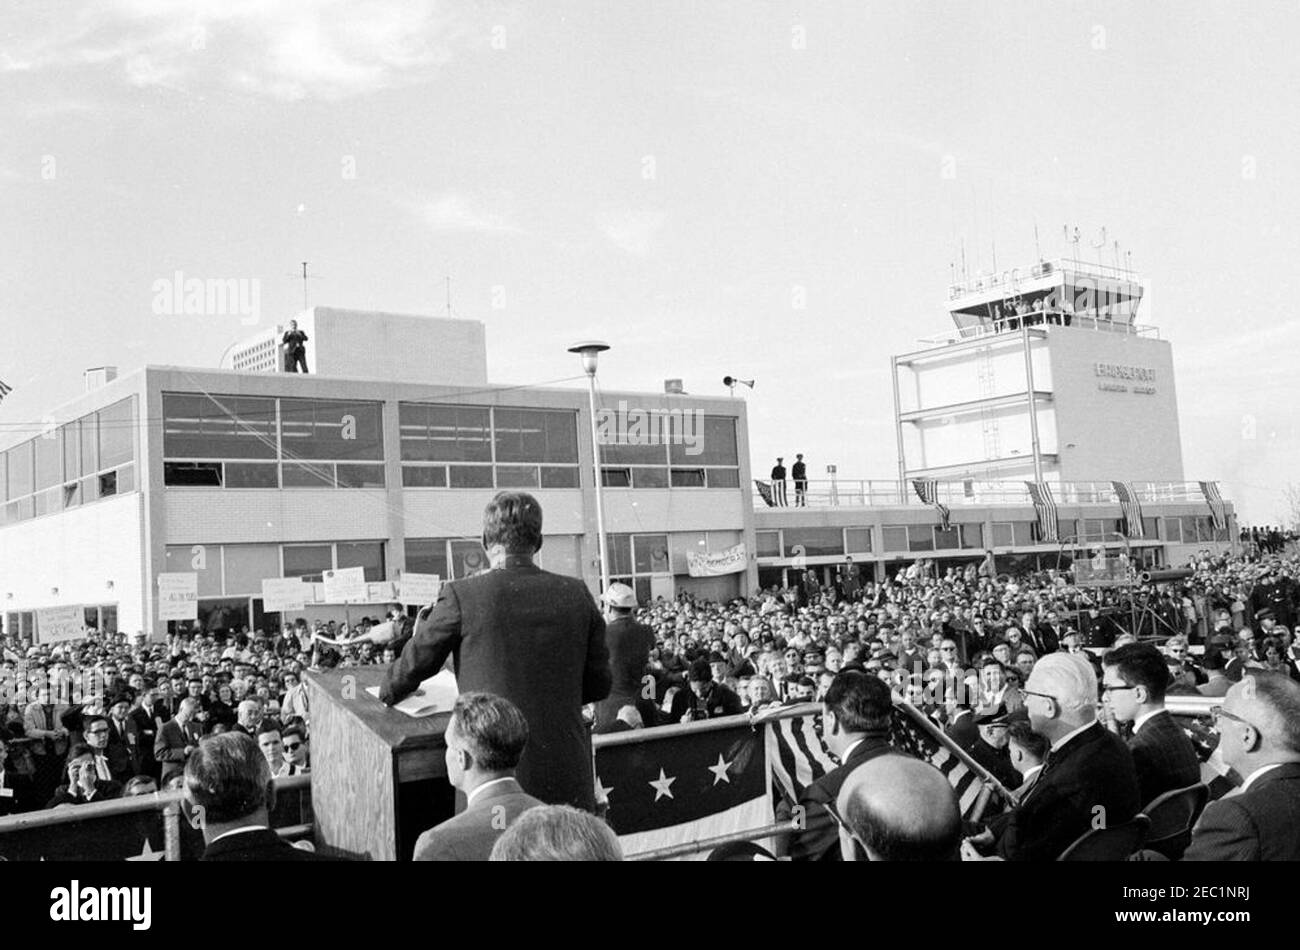 Voyage de campagne du Congrès : Bridgeport, Connecticut, rallye à l'aéroport. Le président John F. Kennedy fait des remarques à l'aéroport municipal de Bridgeport à Stratford, dans le Connecticut, au cours d'un voyage de campagne du Congrès. Banque D'Images